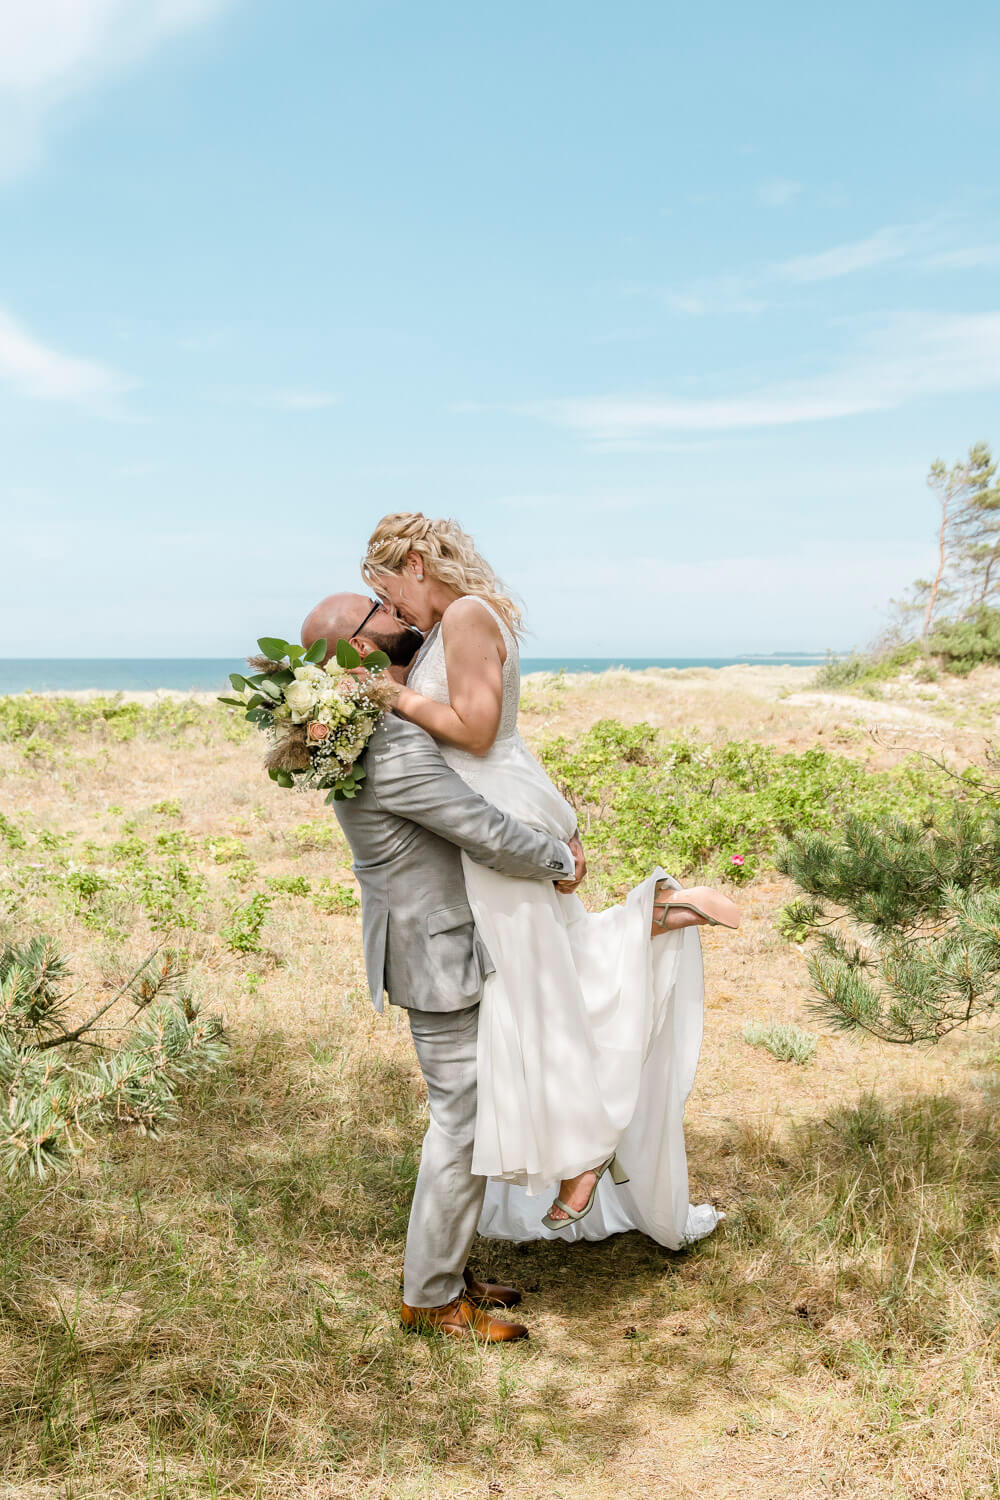 Der Ehemann hebt seine Braut hoch und küsst sie. Hochzeitsfoto mit Ostsee-Kulisse.